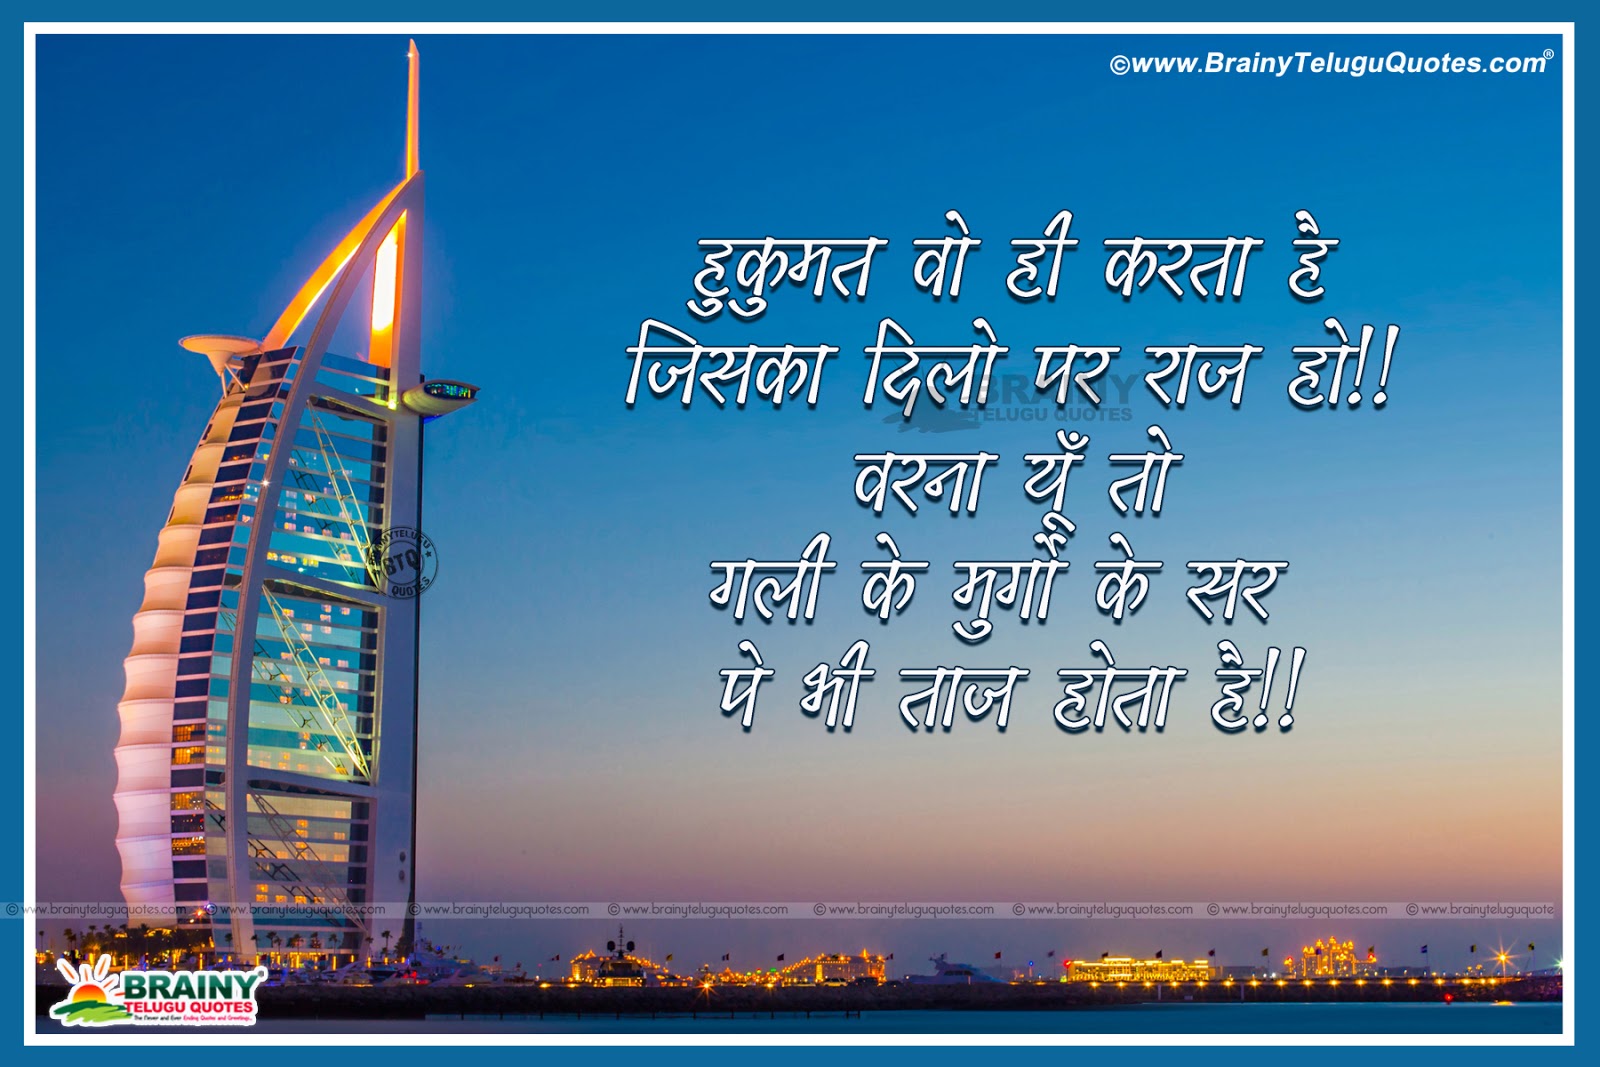 Inspirational Hindi quotes on Life-Anmol Vachan in Hindi